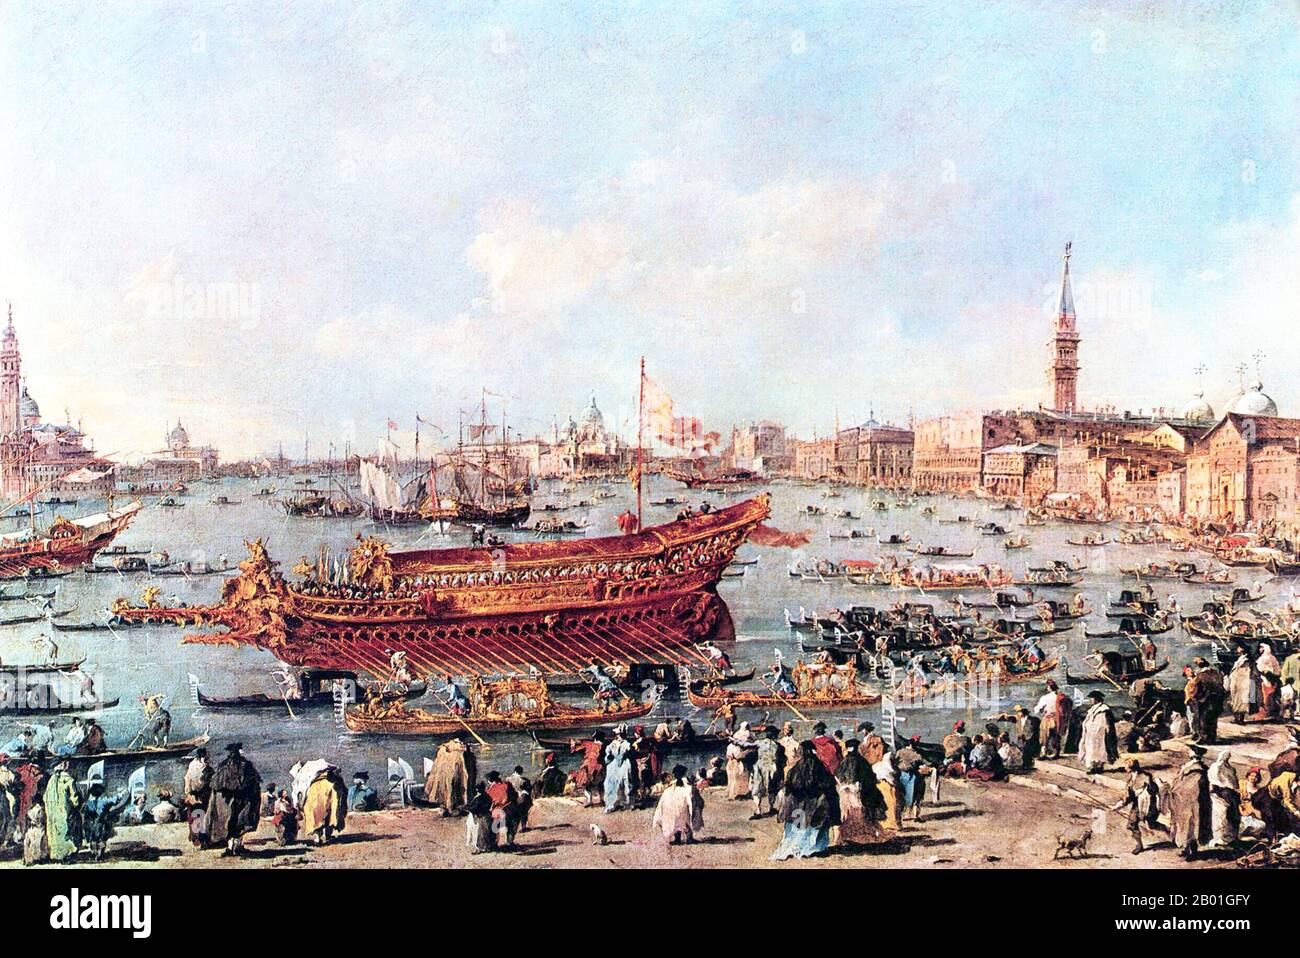 Italien/Venedig: "Der Doge am Bucintoro in der Nähe der Riva di Sant'Elena". Ölgemälde von Francesco Guardi (5. Oktober 1712 bis 1. Januar 1793), 1775-1780. Jahrhundertelang war Venedig Europas wichtigster Handelspartner im Nahen Osten und insbesondere im Byzantinischen Reich. Die venezianische Marine- und Handelsmacht war in Europa einzigartig, bis sie im 15. Jahrhundert eine Reihe von Kriegen gegen die osmanischen Armeen verlor. Die Stadt verlor in den Jahren 1575 bis 1577 etwa 50.000 Menschen durch den Schwarzen Tod, blieb aber bis weit ins 18. Jahrhundert ein wichtiges Fertigungszentrum und Hafen. Stockfoto